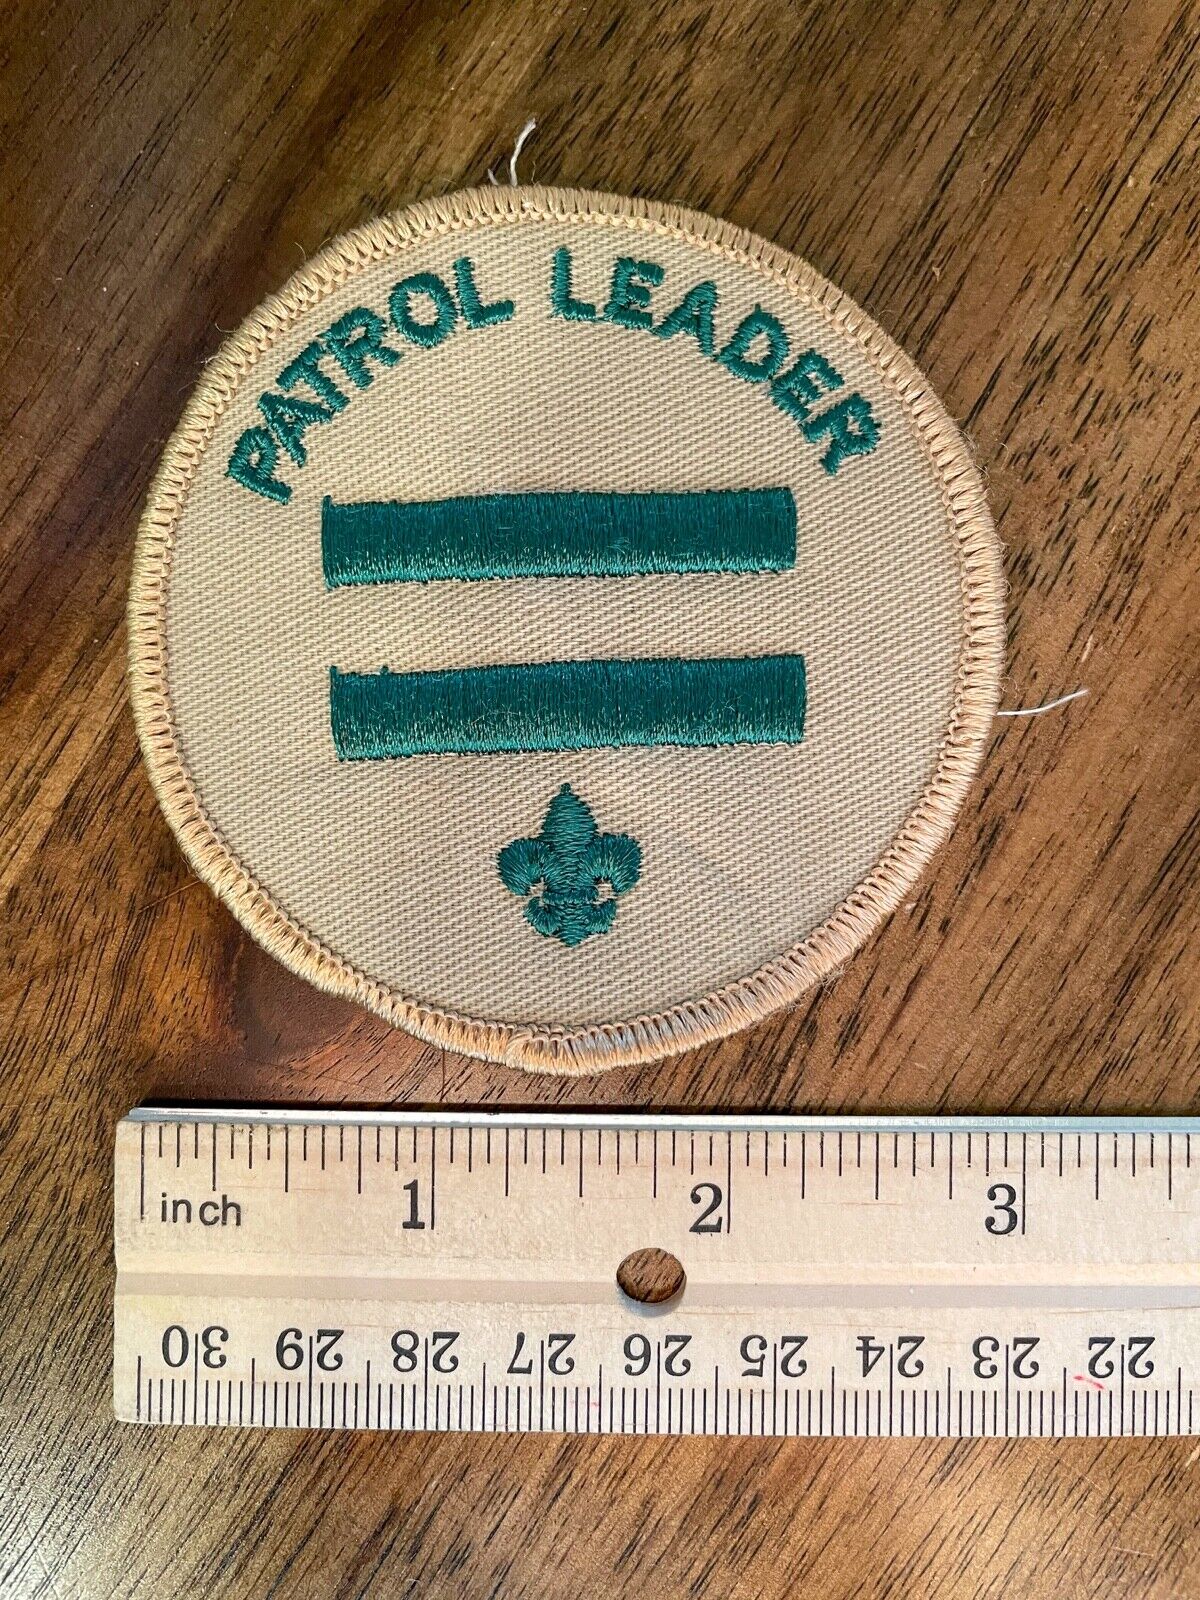 BSA Patrol Leader shoulder patch Vintage (1990s)